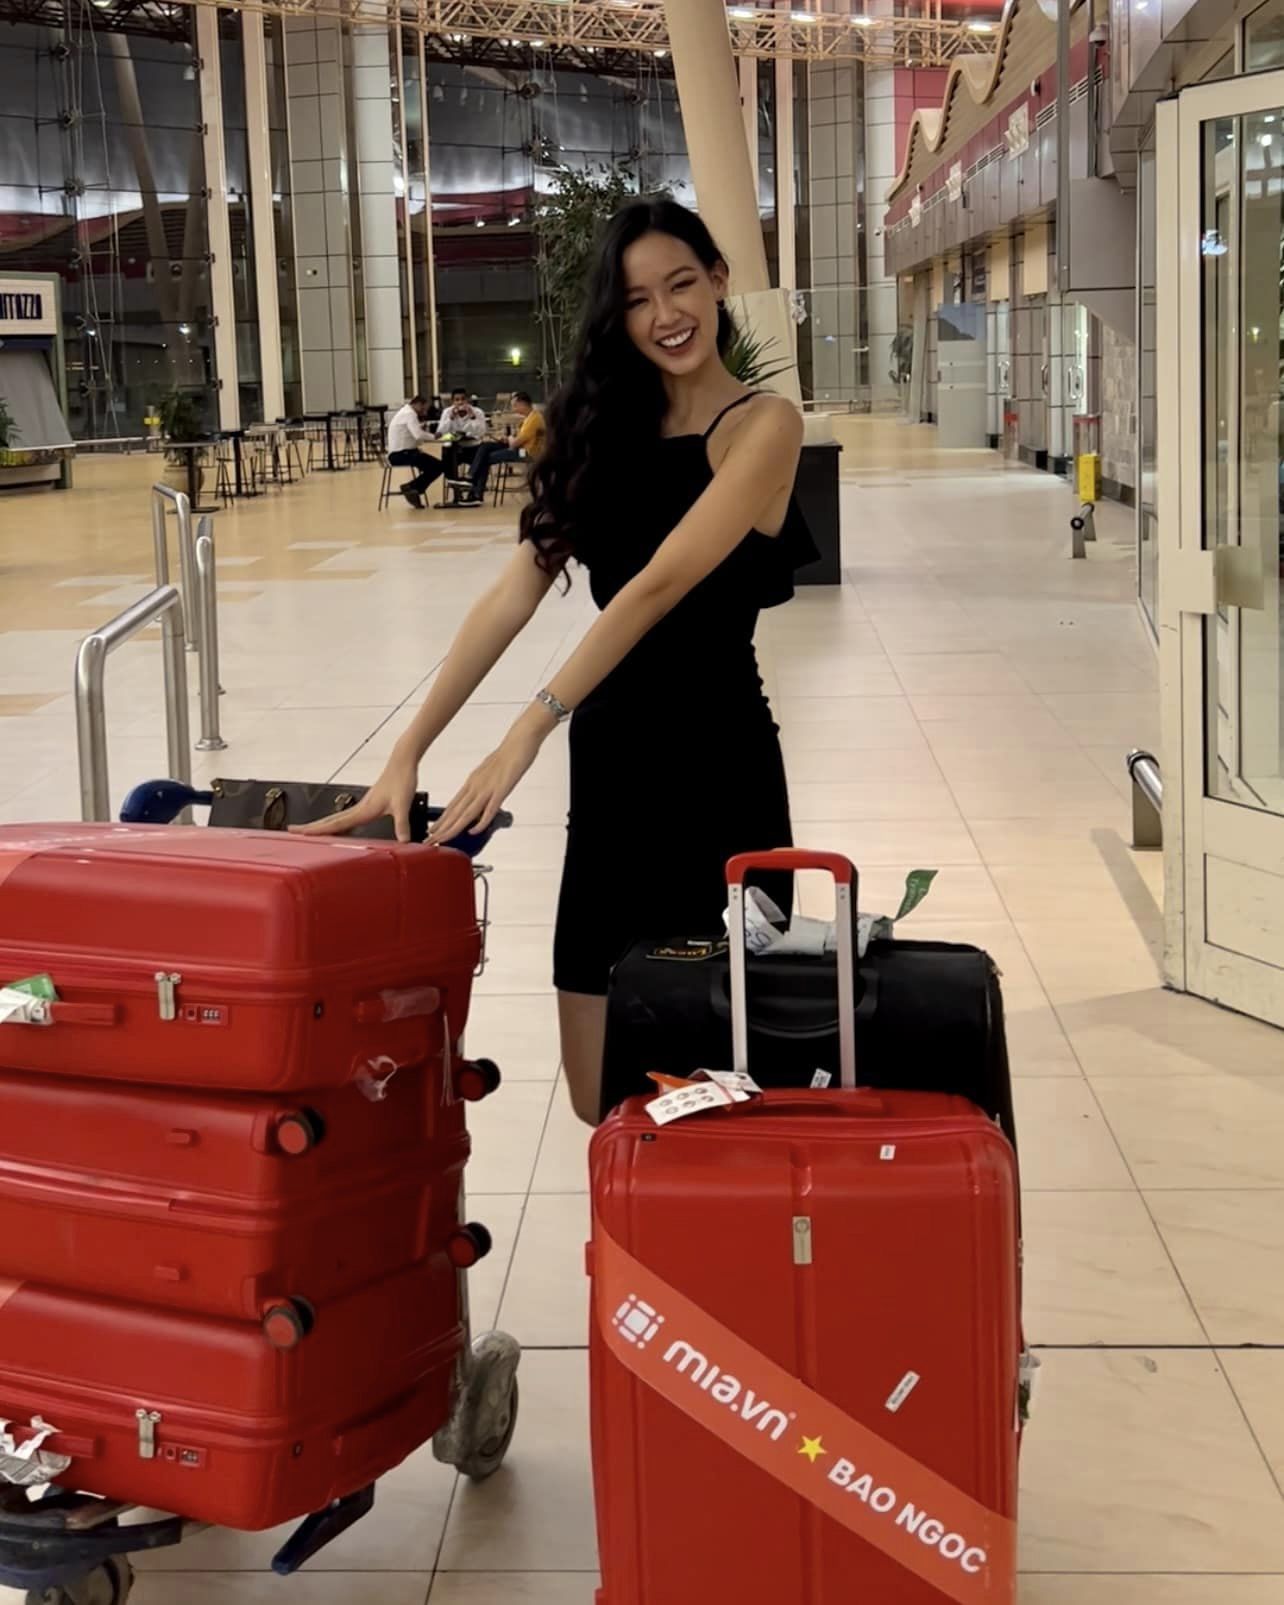 Á hậu Bảo Ngọc gặp sự cố tại sân bay quốc tế - Ảnh 1.